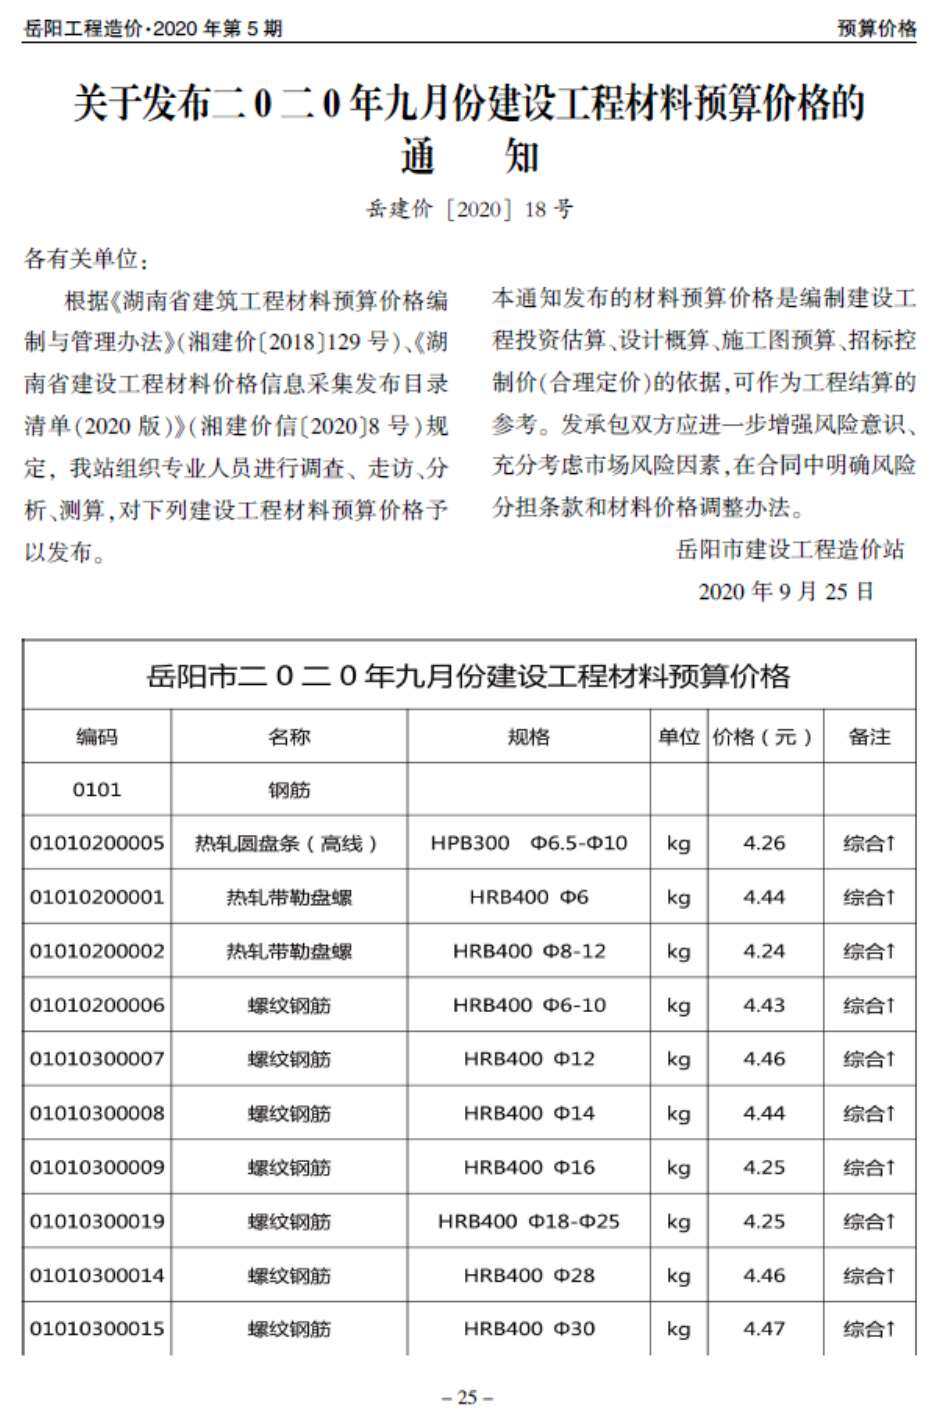 岳阳市2020年5月工程造价信息期刊